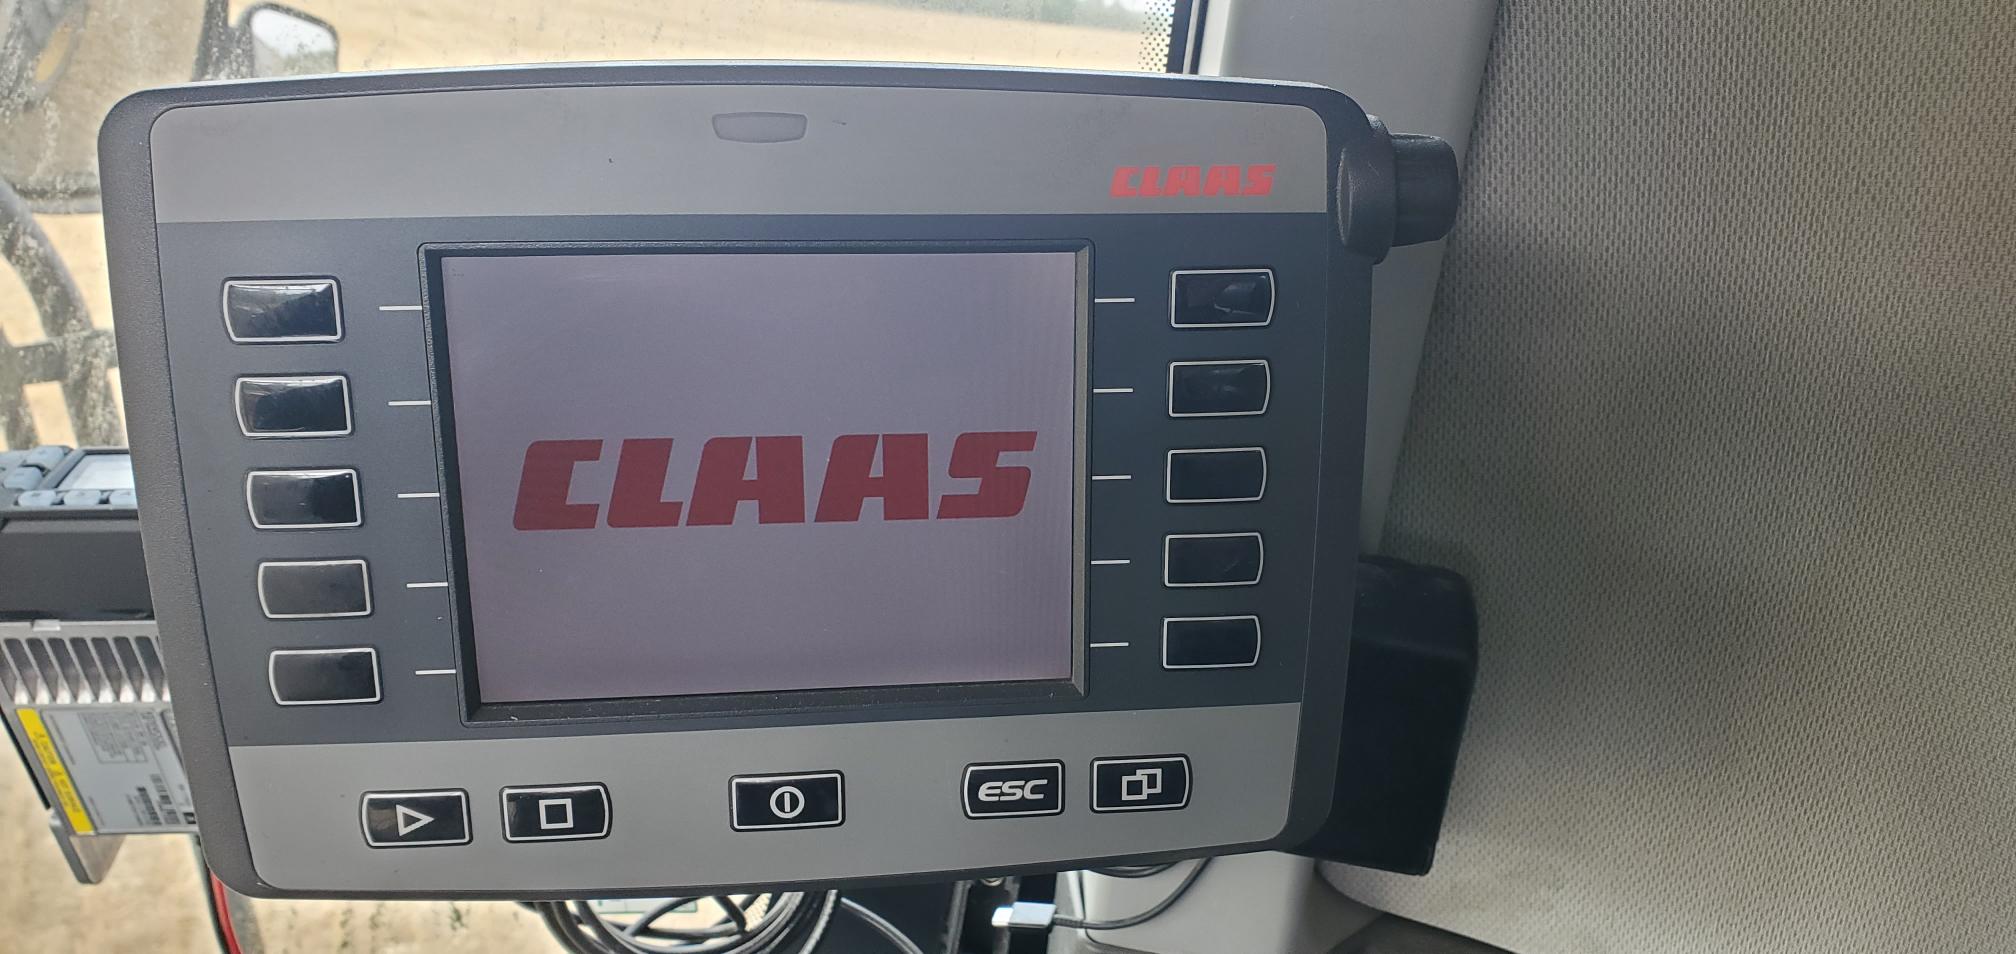 2019 CLAAS 760 Combine